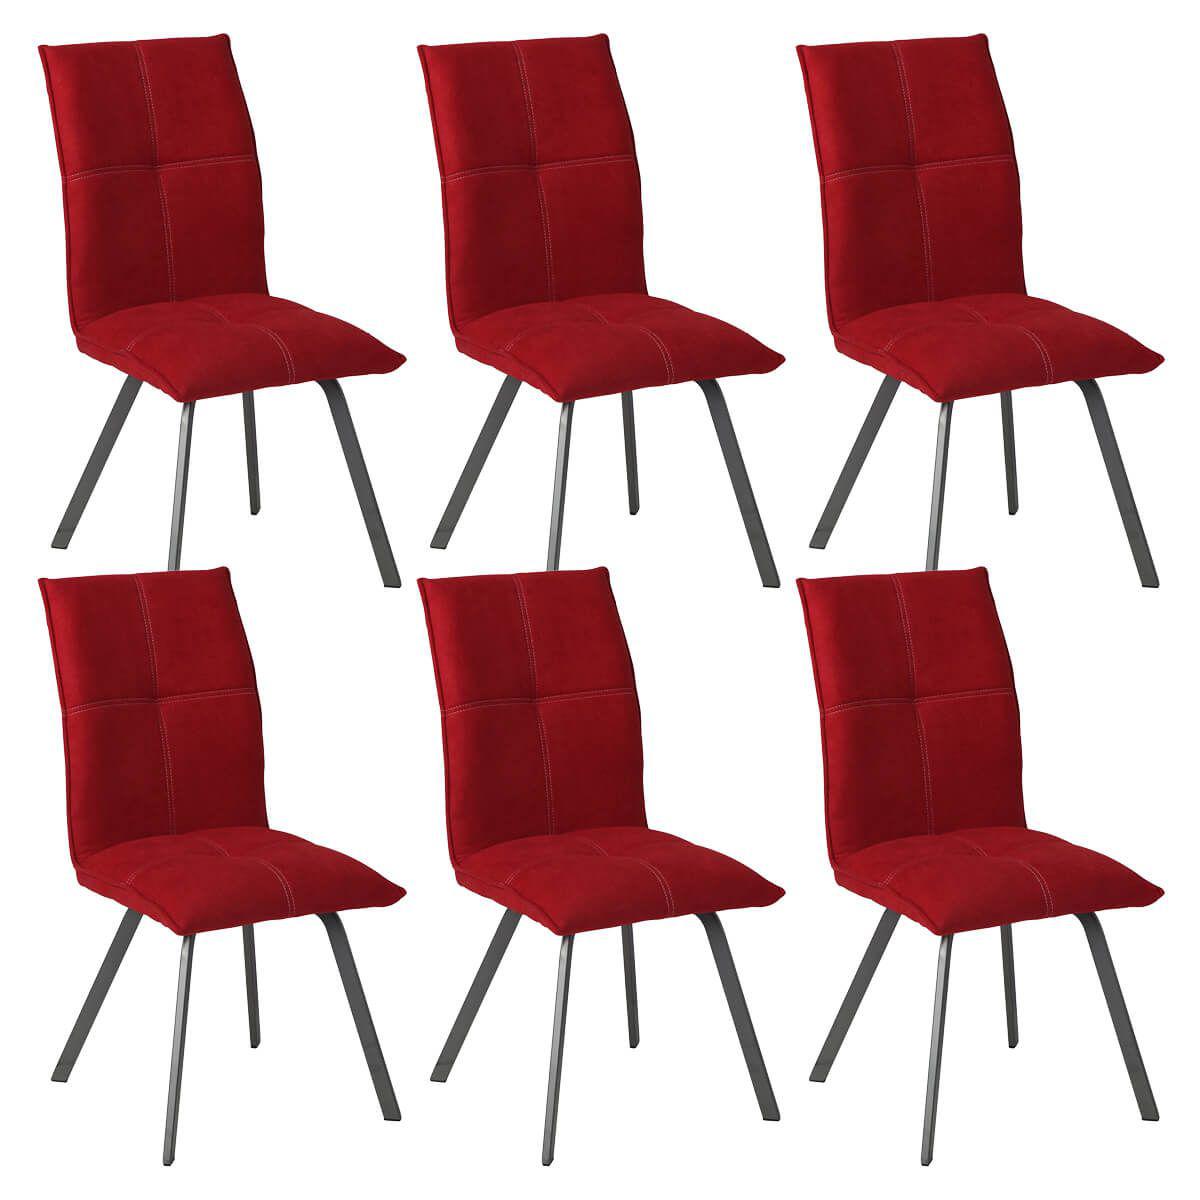 Altobuy - BISPO - Lot de 6 Chaises Tissu Coloris Rouge - Chaises